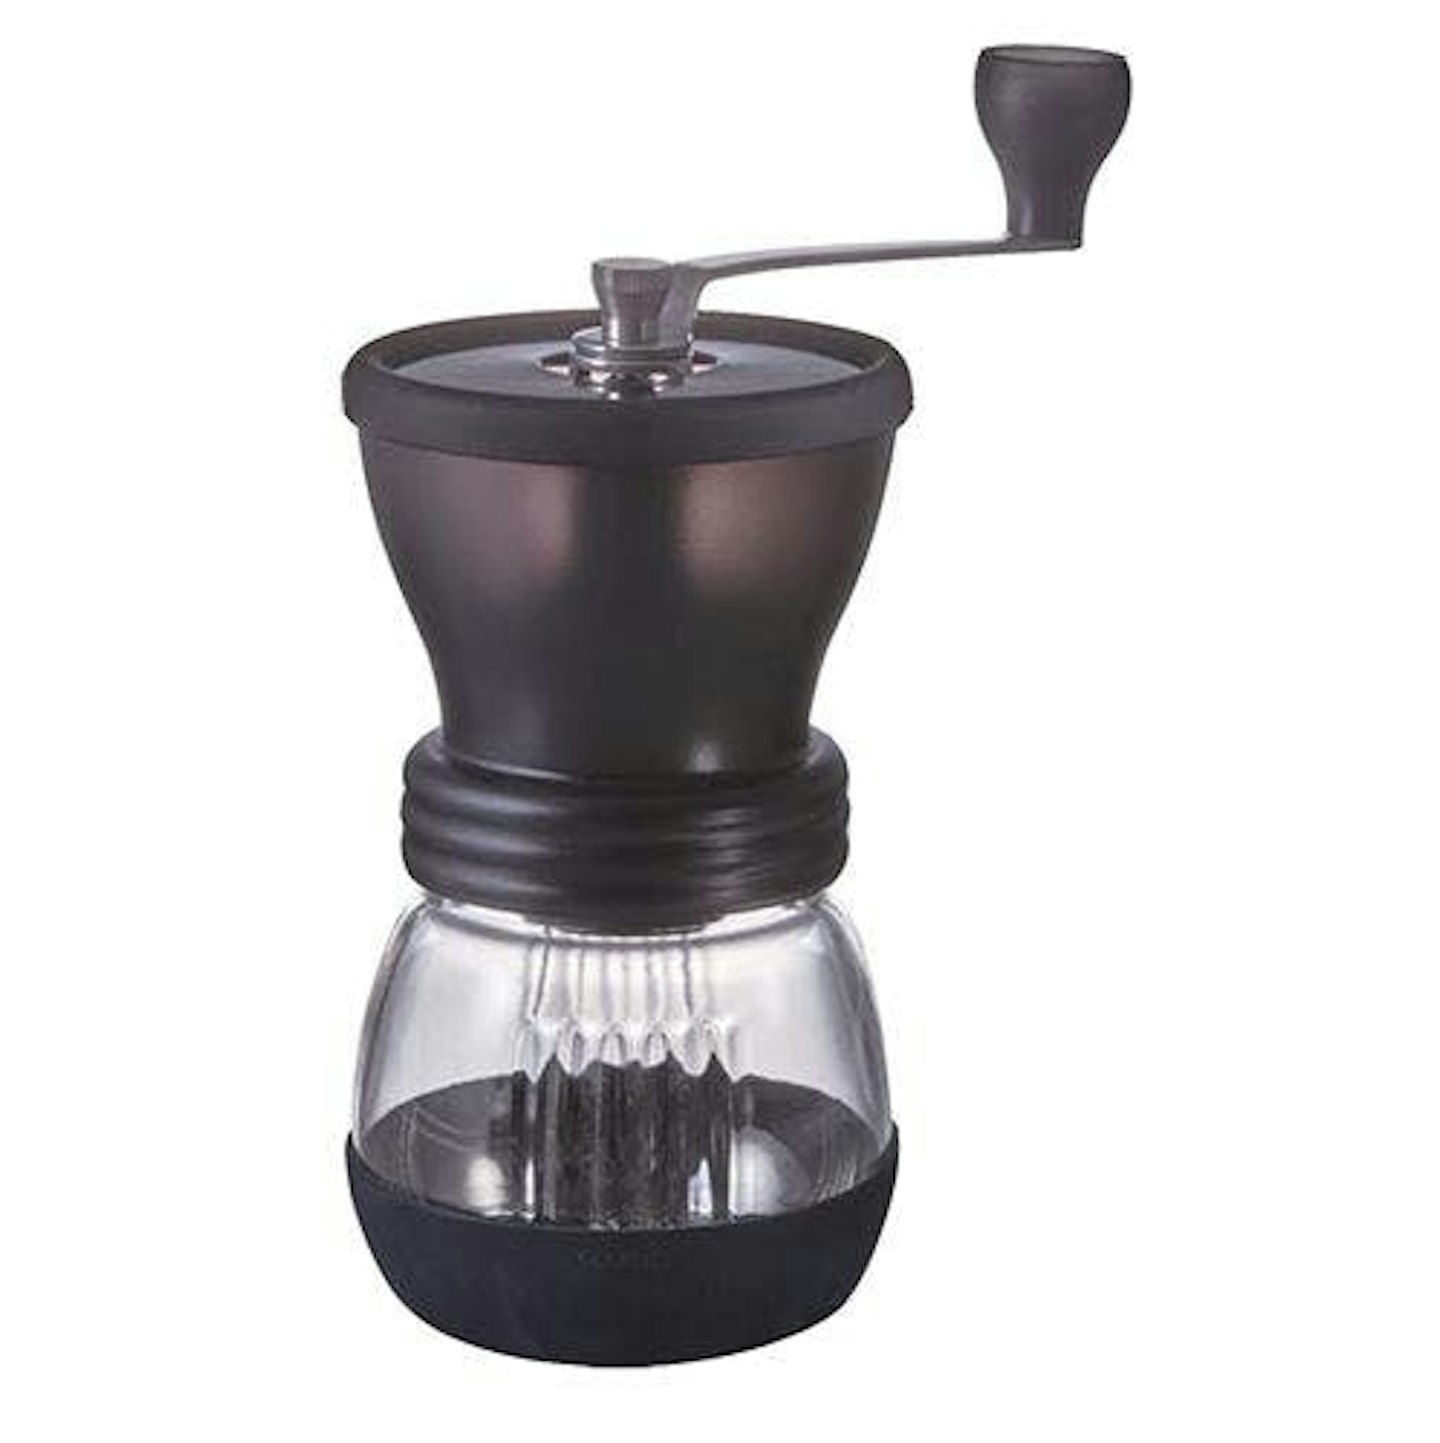 Best coffee grinders: Hario Skerton Hand Coffee Grinder